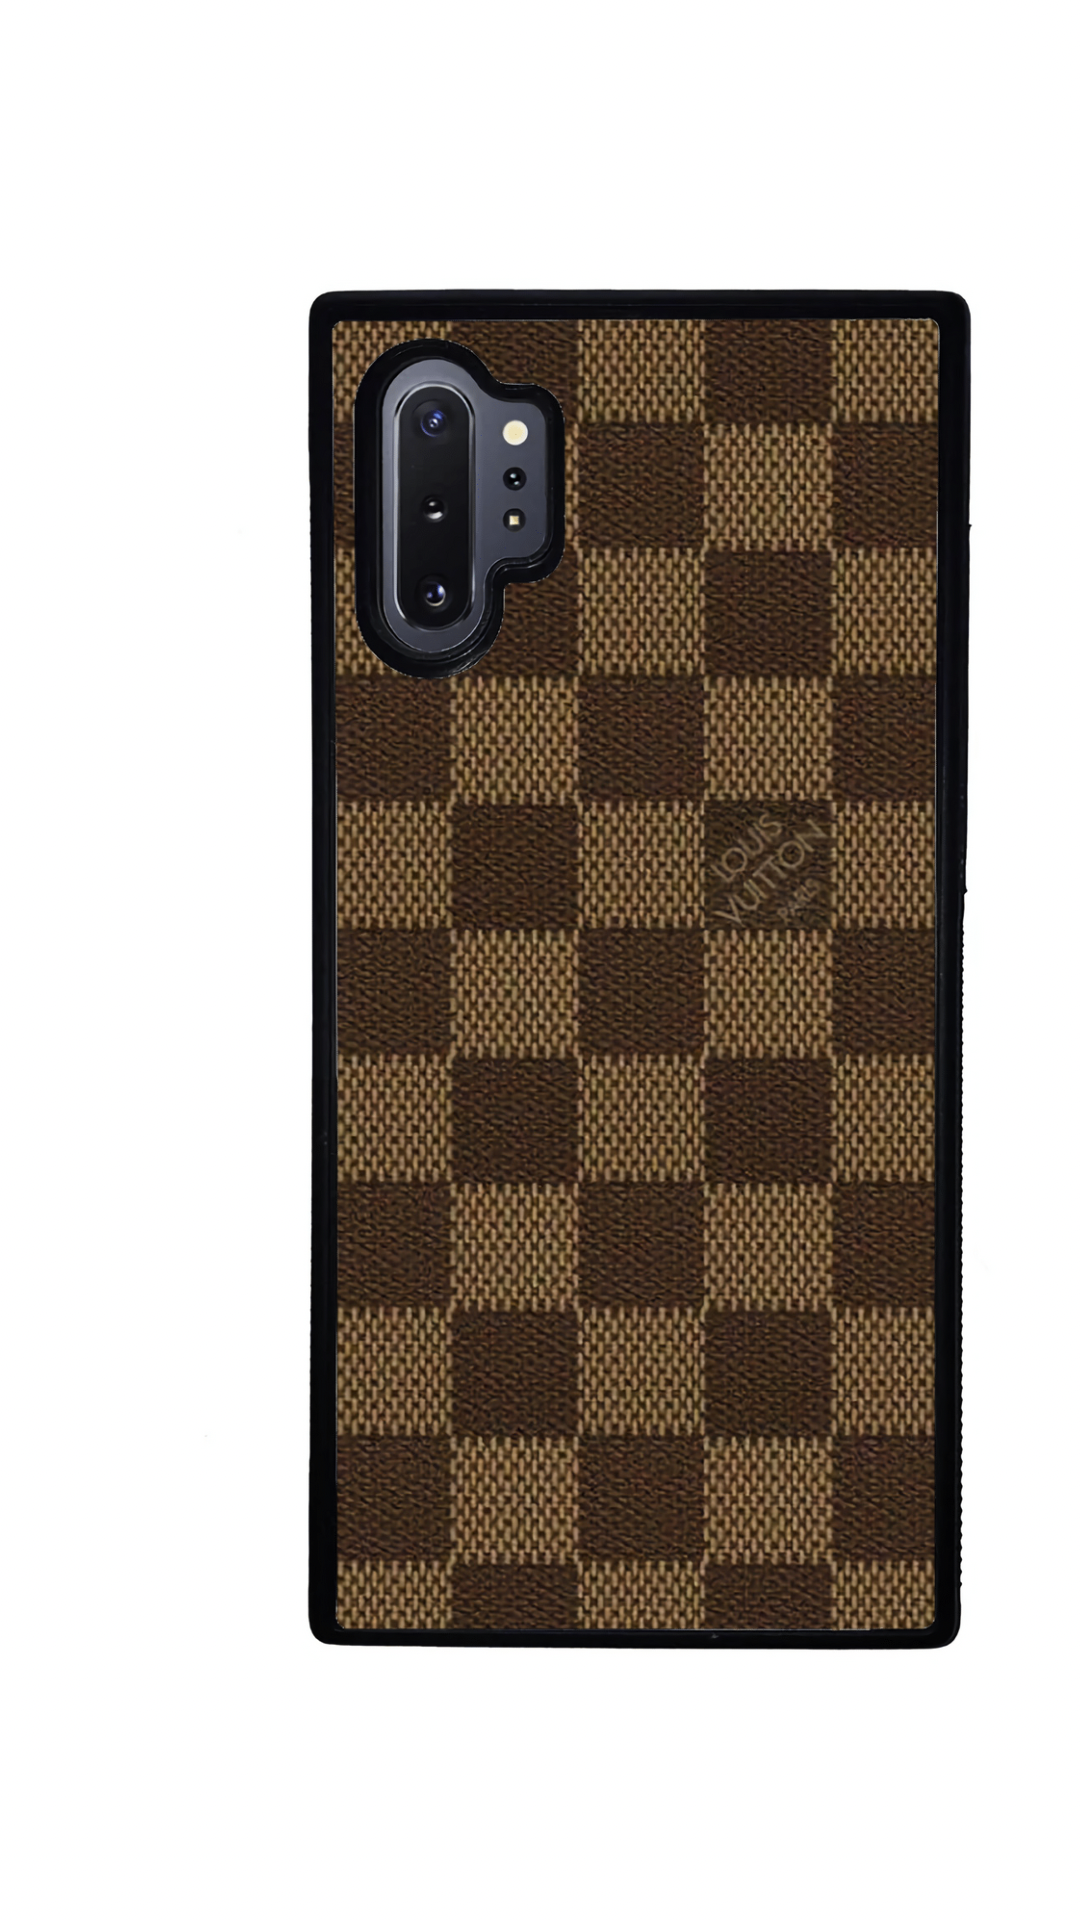 Louis Vuitton Wallet Case iphone 11,12 iPhone 11,12 Pro iPhone 11,12 Pro  Max , iPhone Xs Max , iPhone 6,7,8 plus